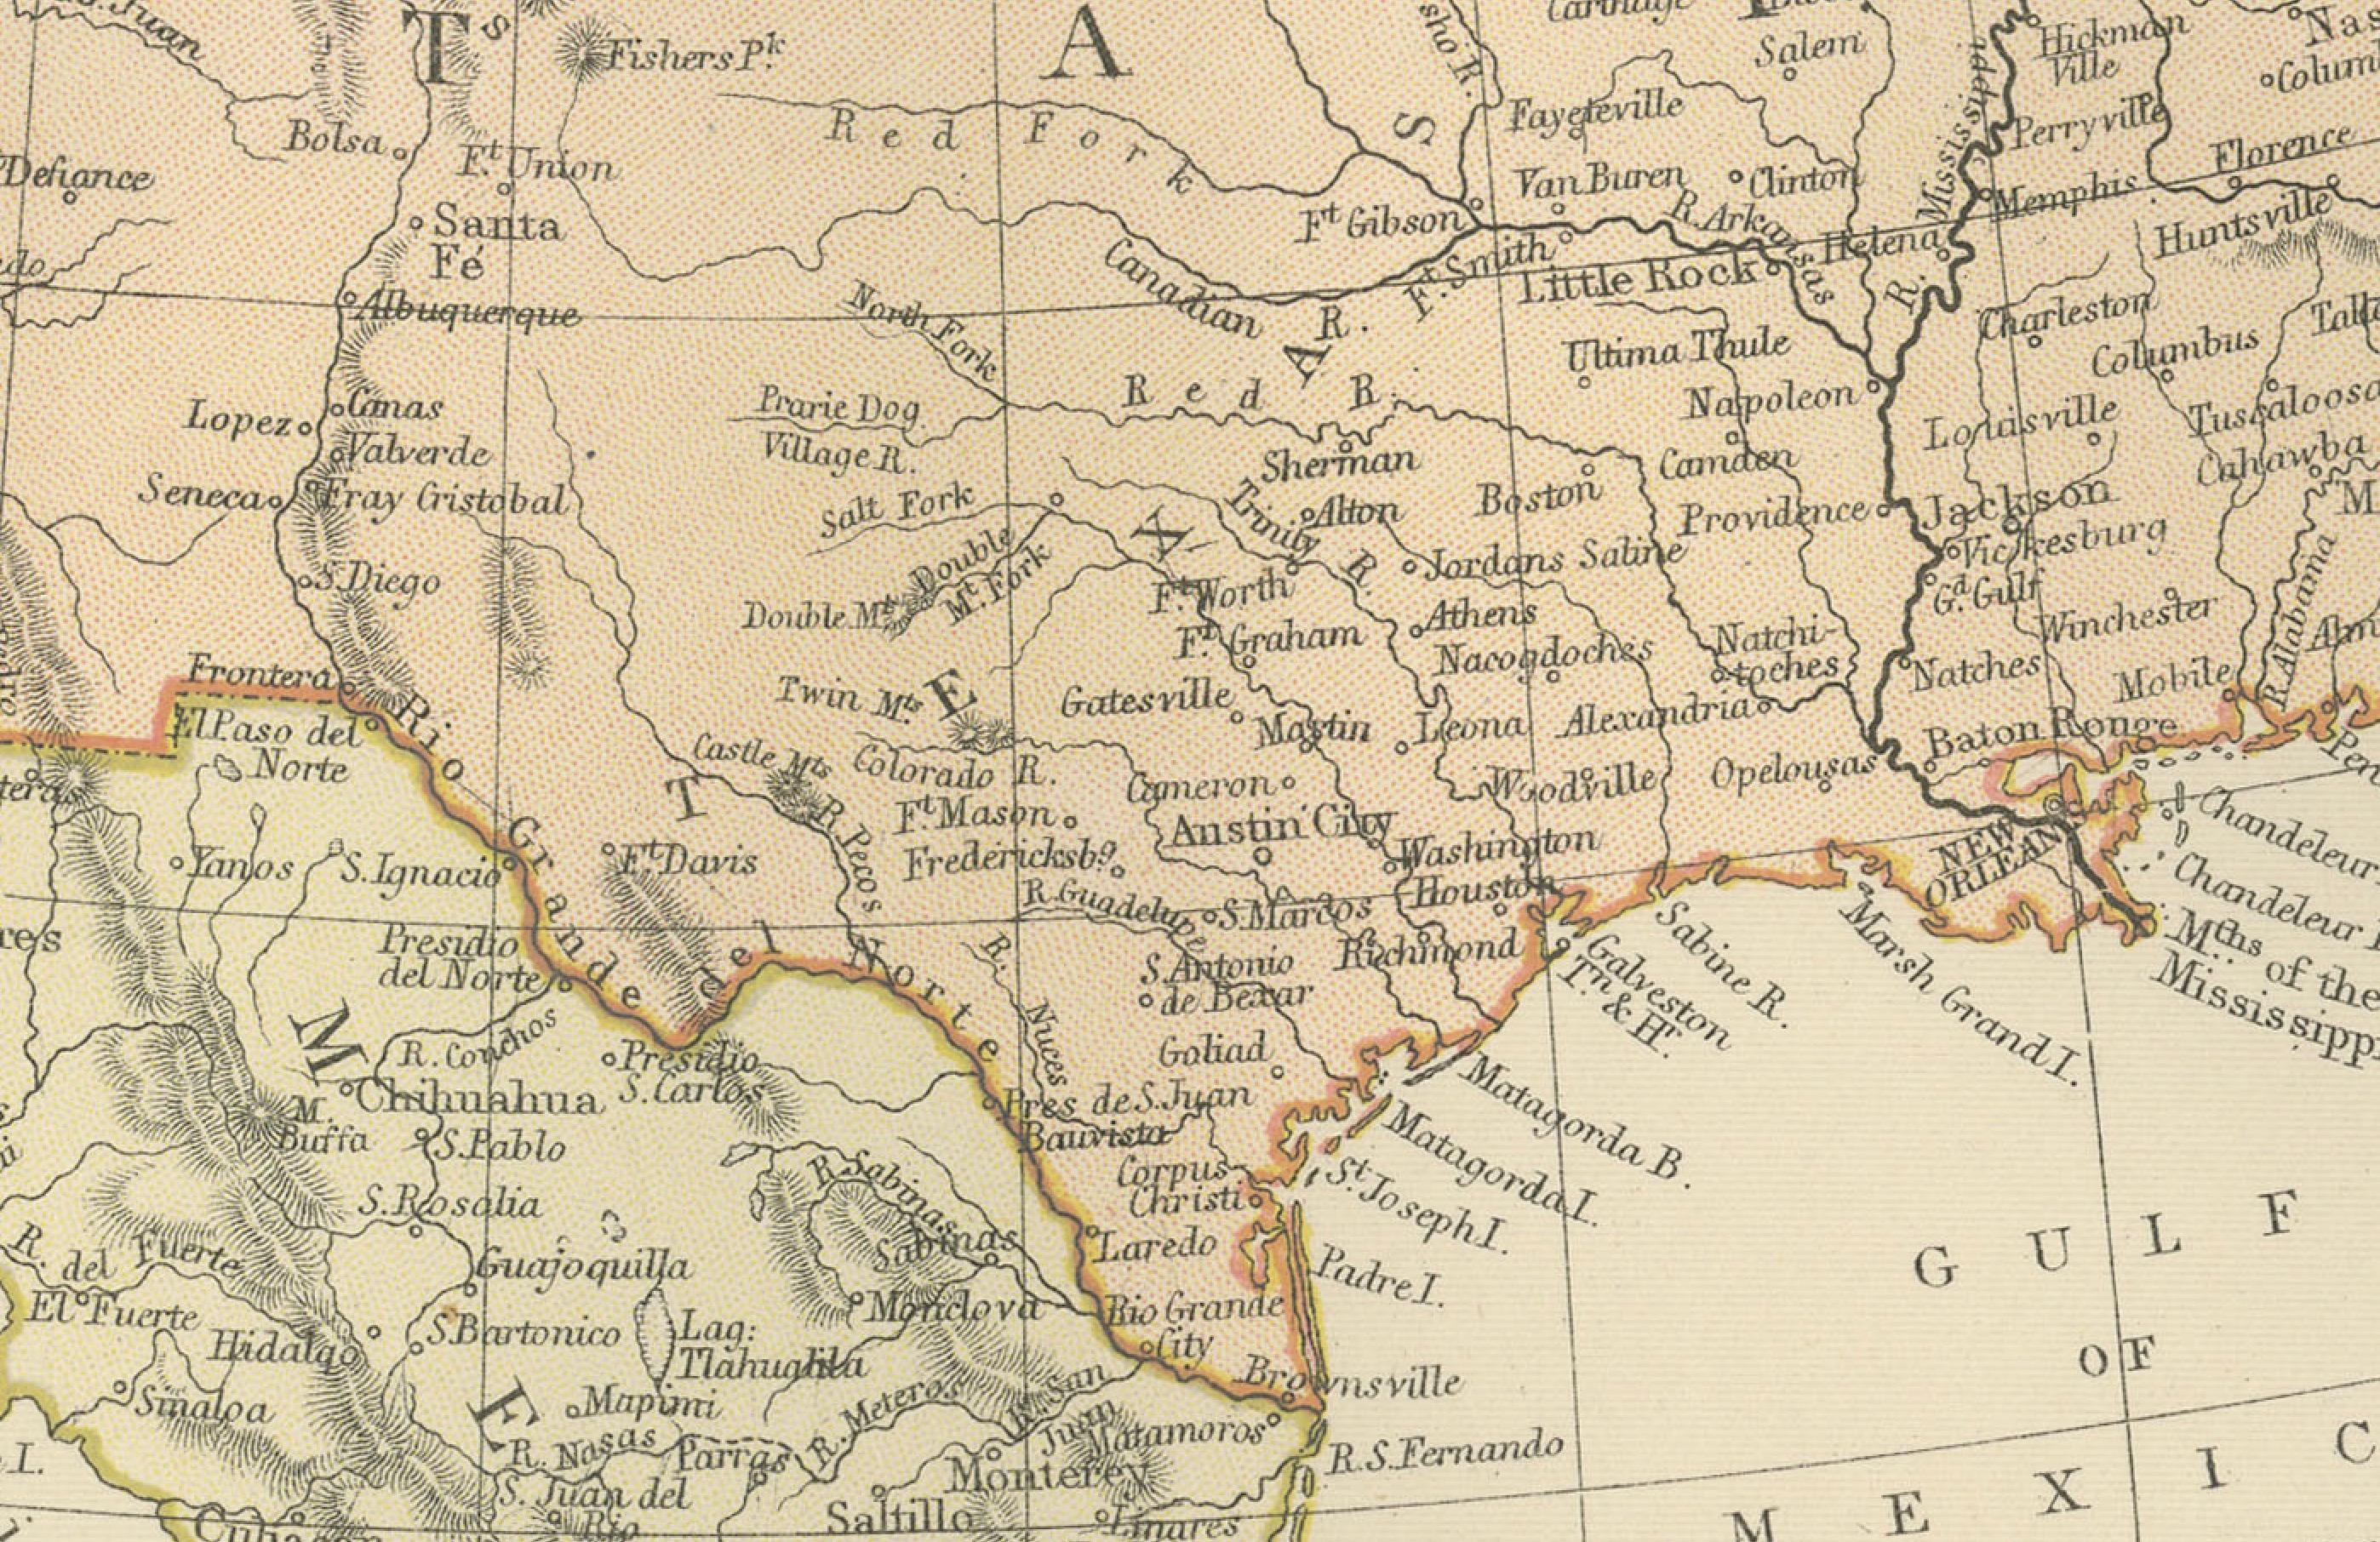 Cette carte ancienne originale de l'Amérique du Nord est tirée de l'Atlas Blackie & Son publié en 1882. Voici quelques points d'intérêt concernant cette carte :

1. **Frontières politiques** : La carte montre probablement les frontières politiques